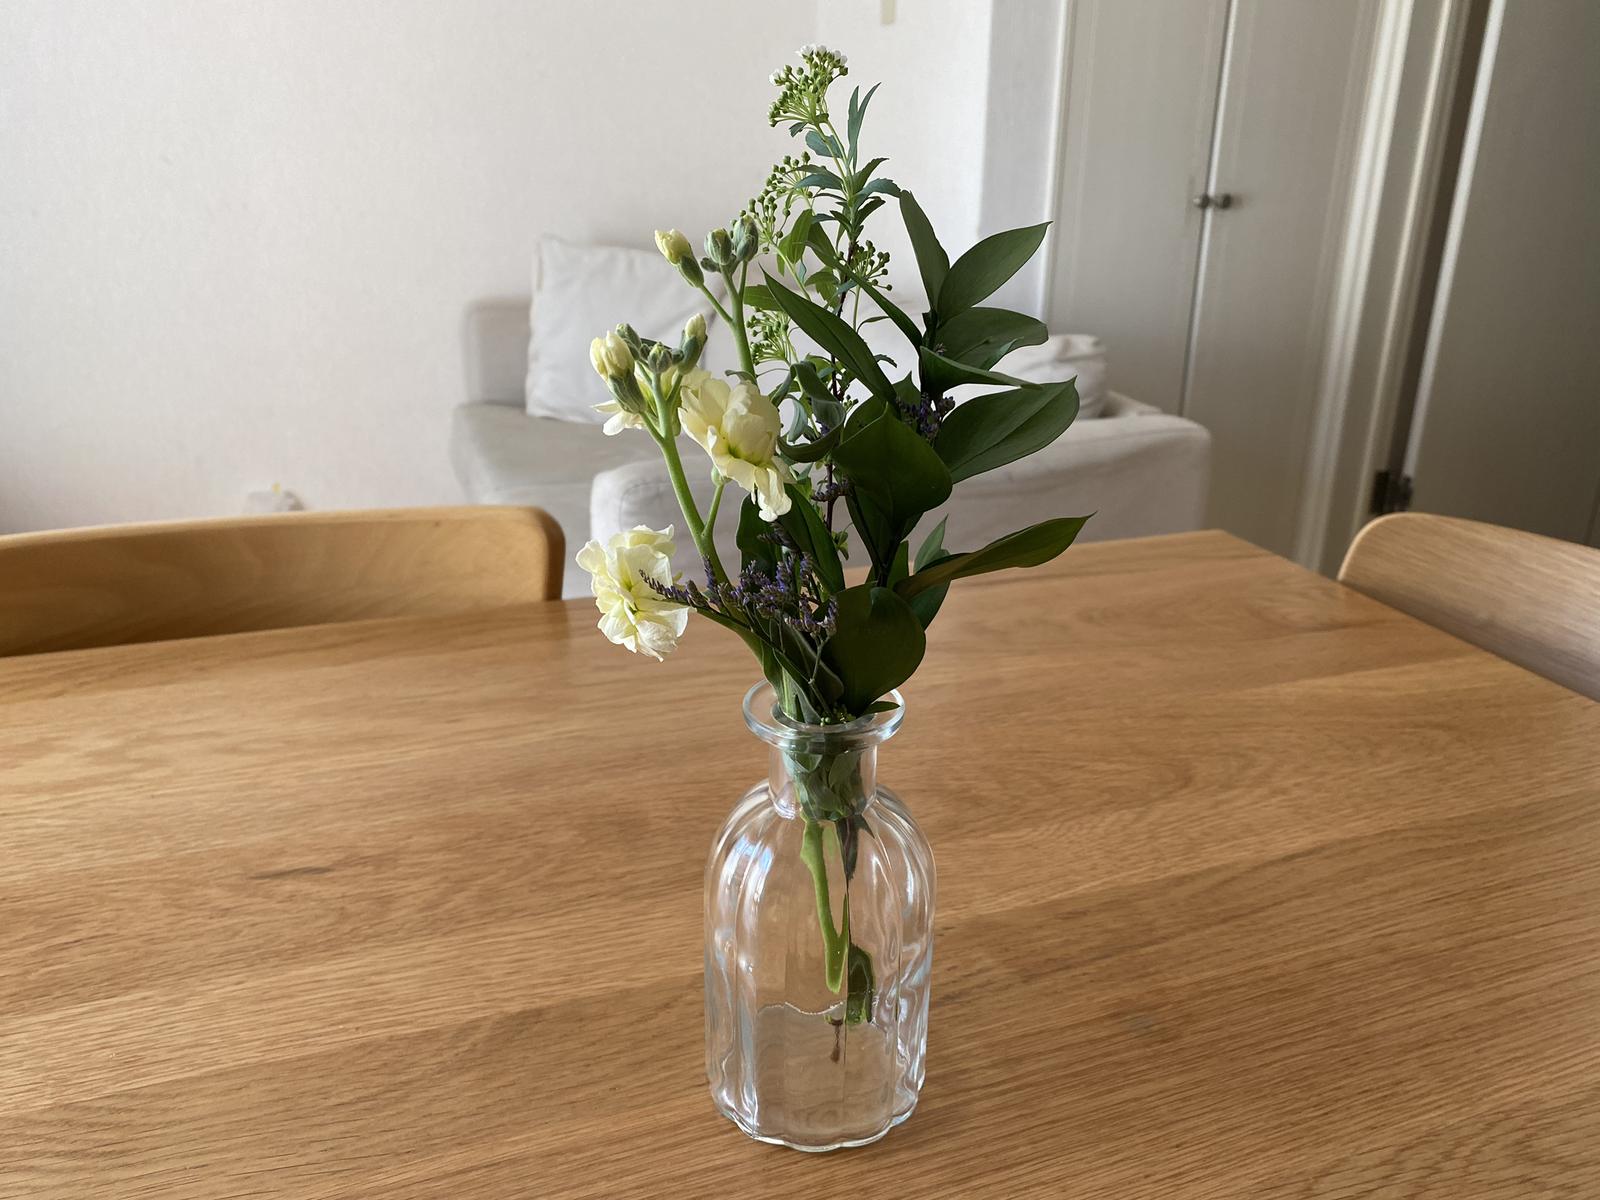 ダイソー の花瓶にキュン 手軽に花のある暮らし 整理収納アドバイザーnocoが投稿したフォトブック Sharee